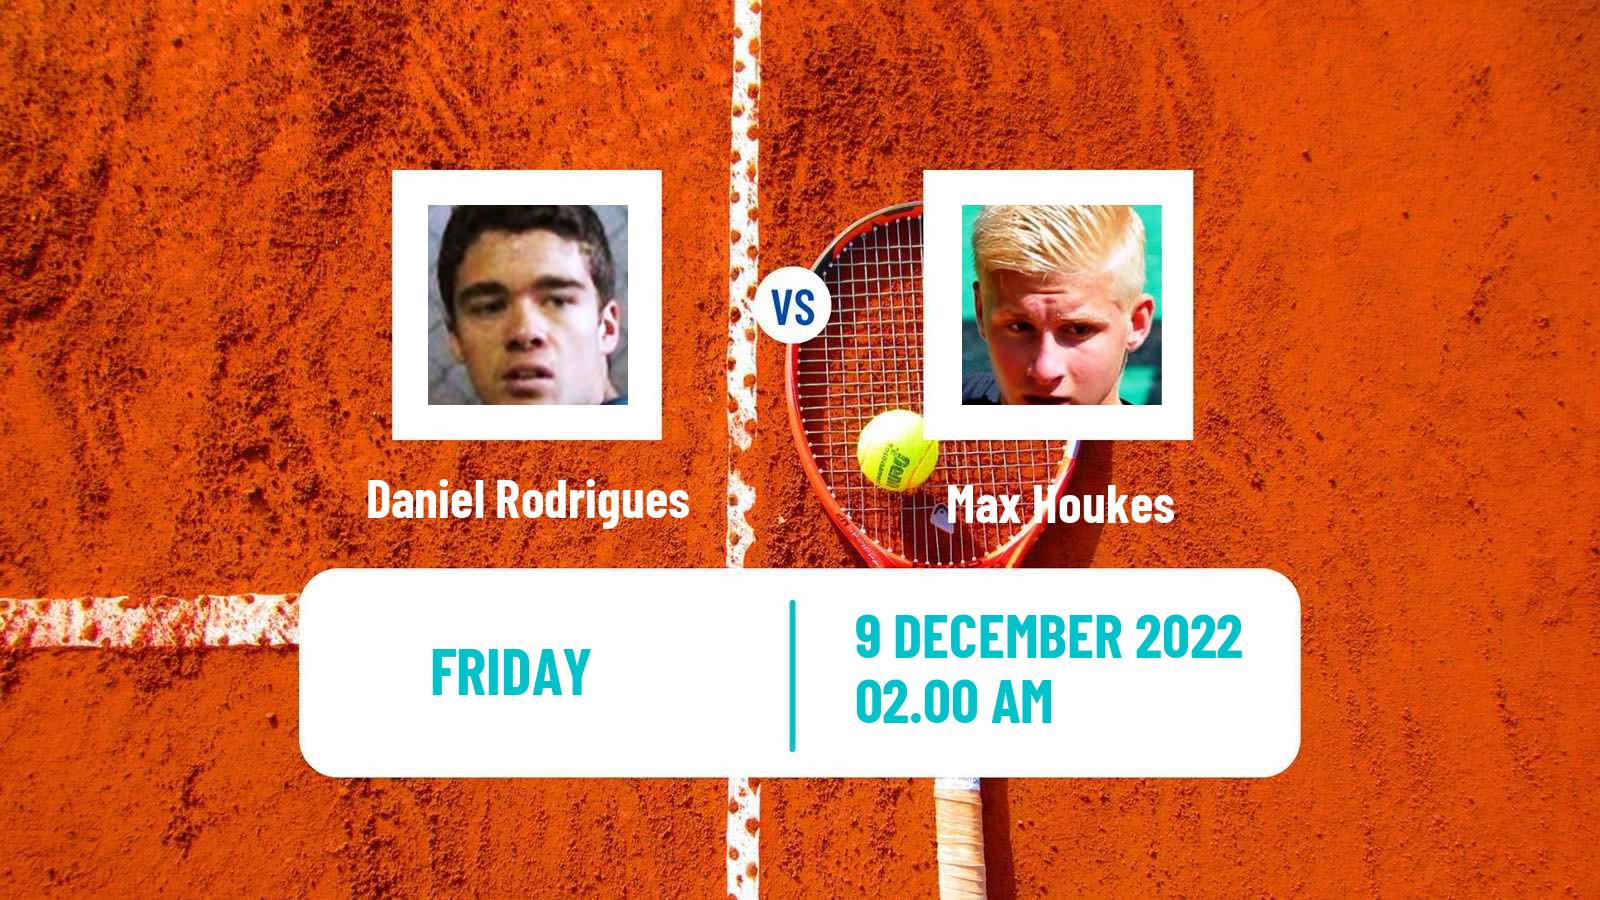 Tennis ITF Tournaments Daniel Rodrigues - Max Houkes